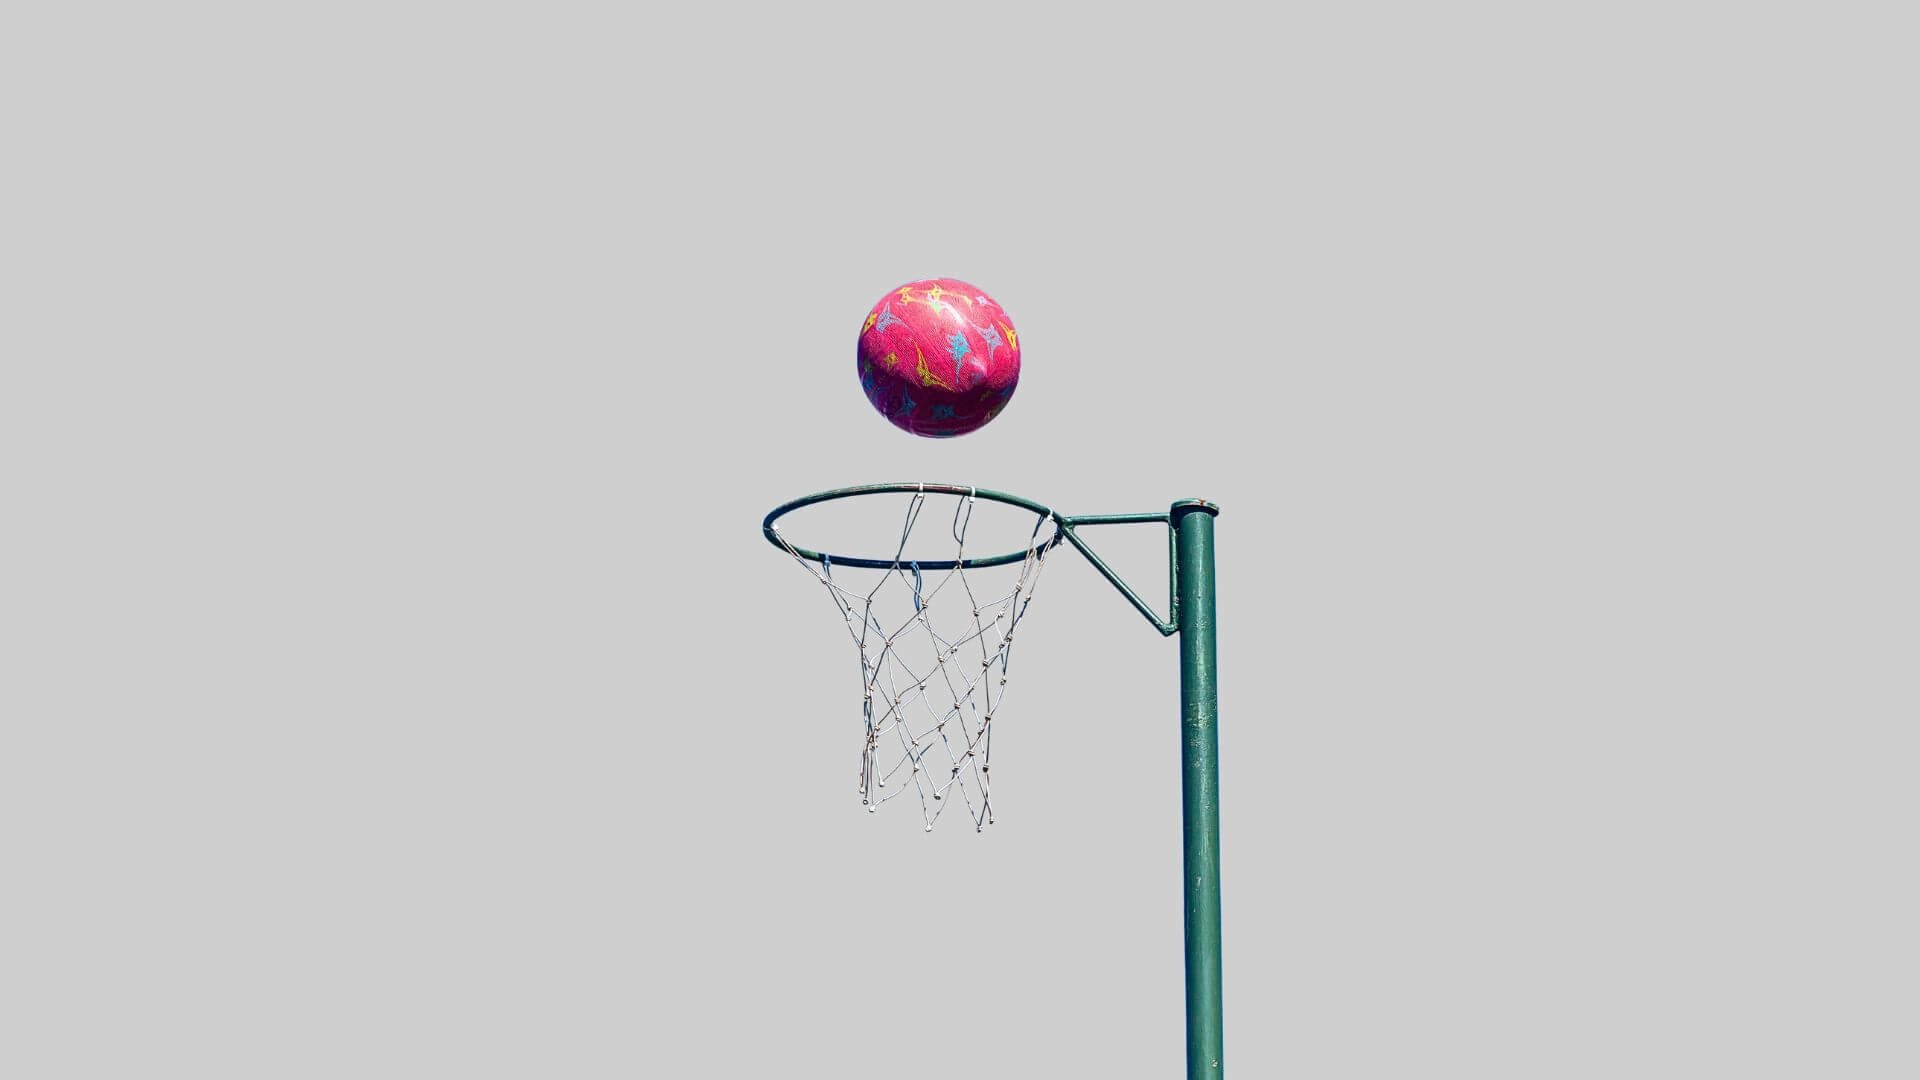 DIY Netball Hoop - YouTube